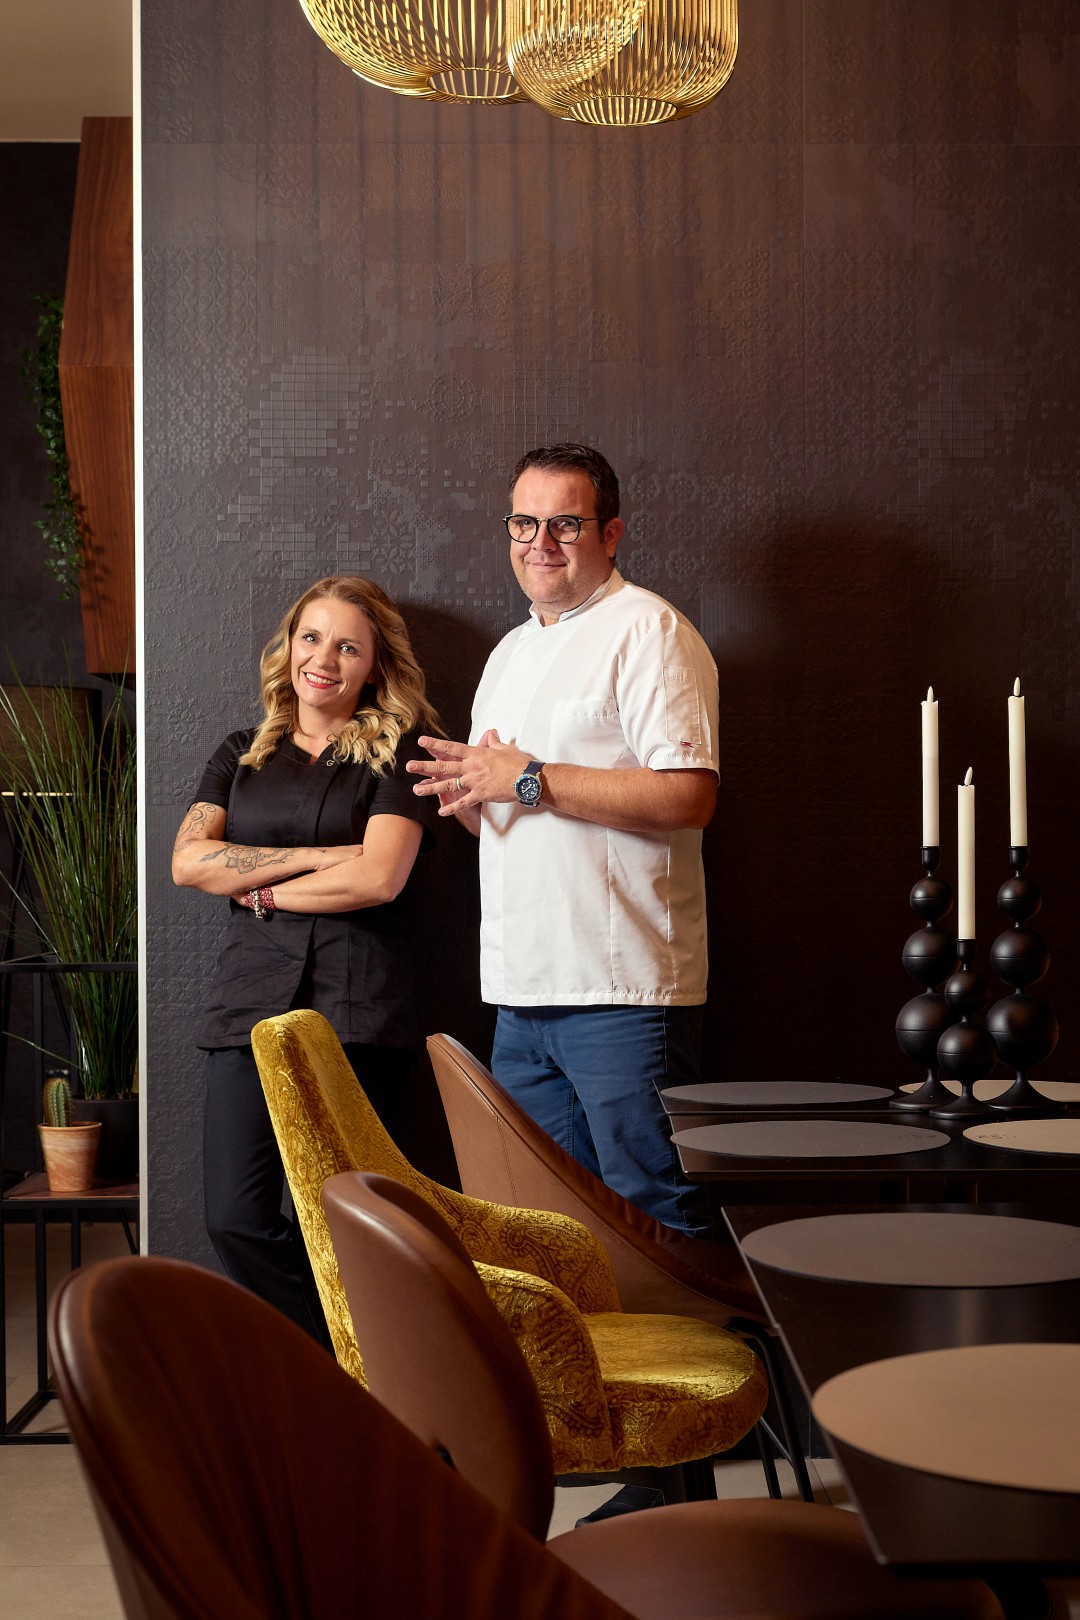 Splitski restoran Allora ponosno predstavila svoje nove partnere - vrhunski chefovi Sandra & Dane od sada su dio Allora tima